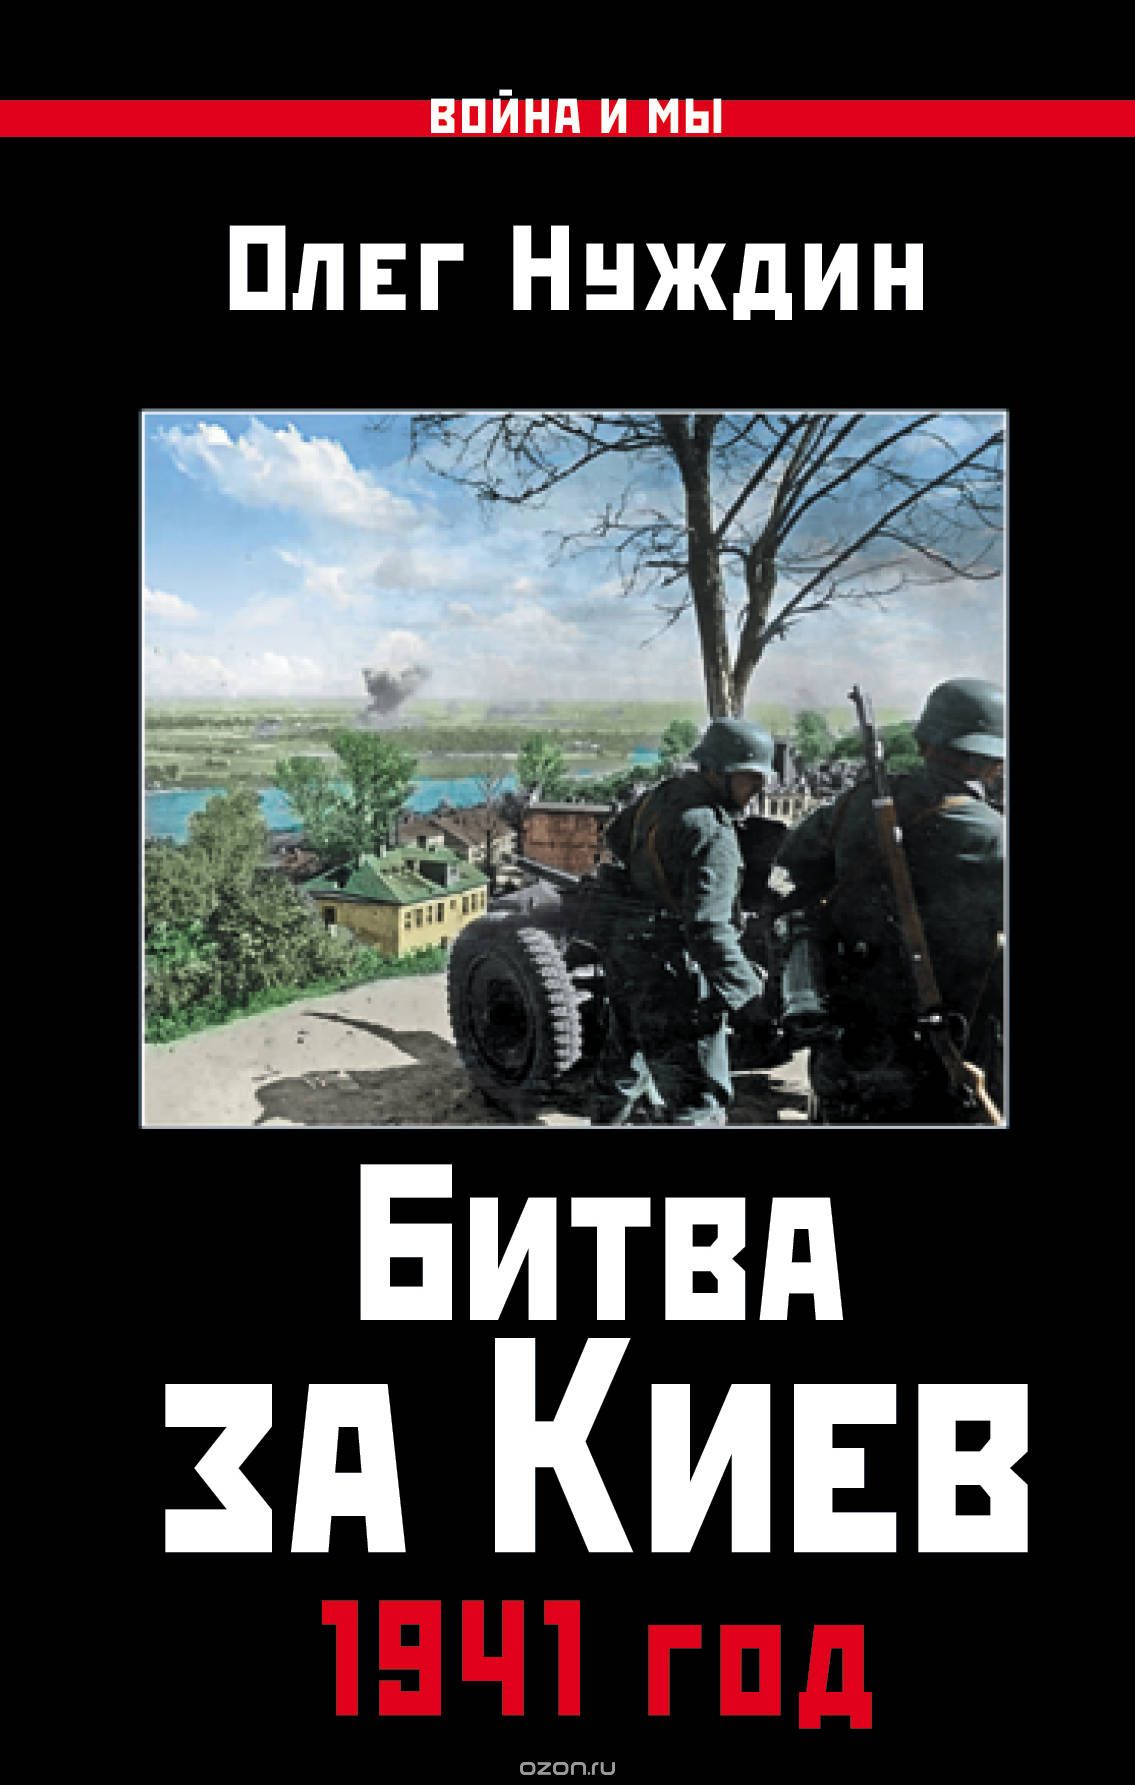 Скачать книгу "Битва за Киев. 1941 год, Олег Нуждин"